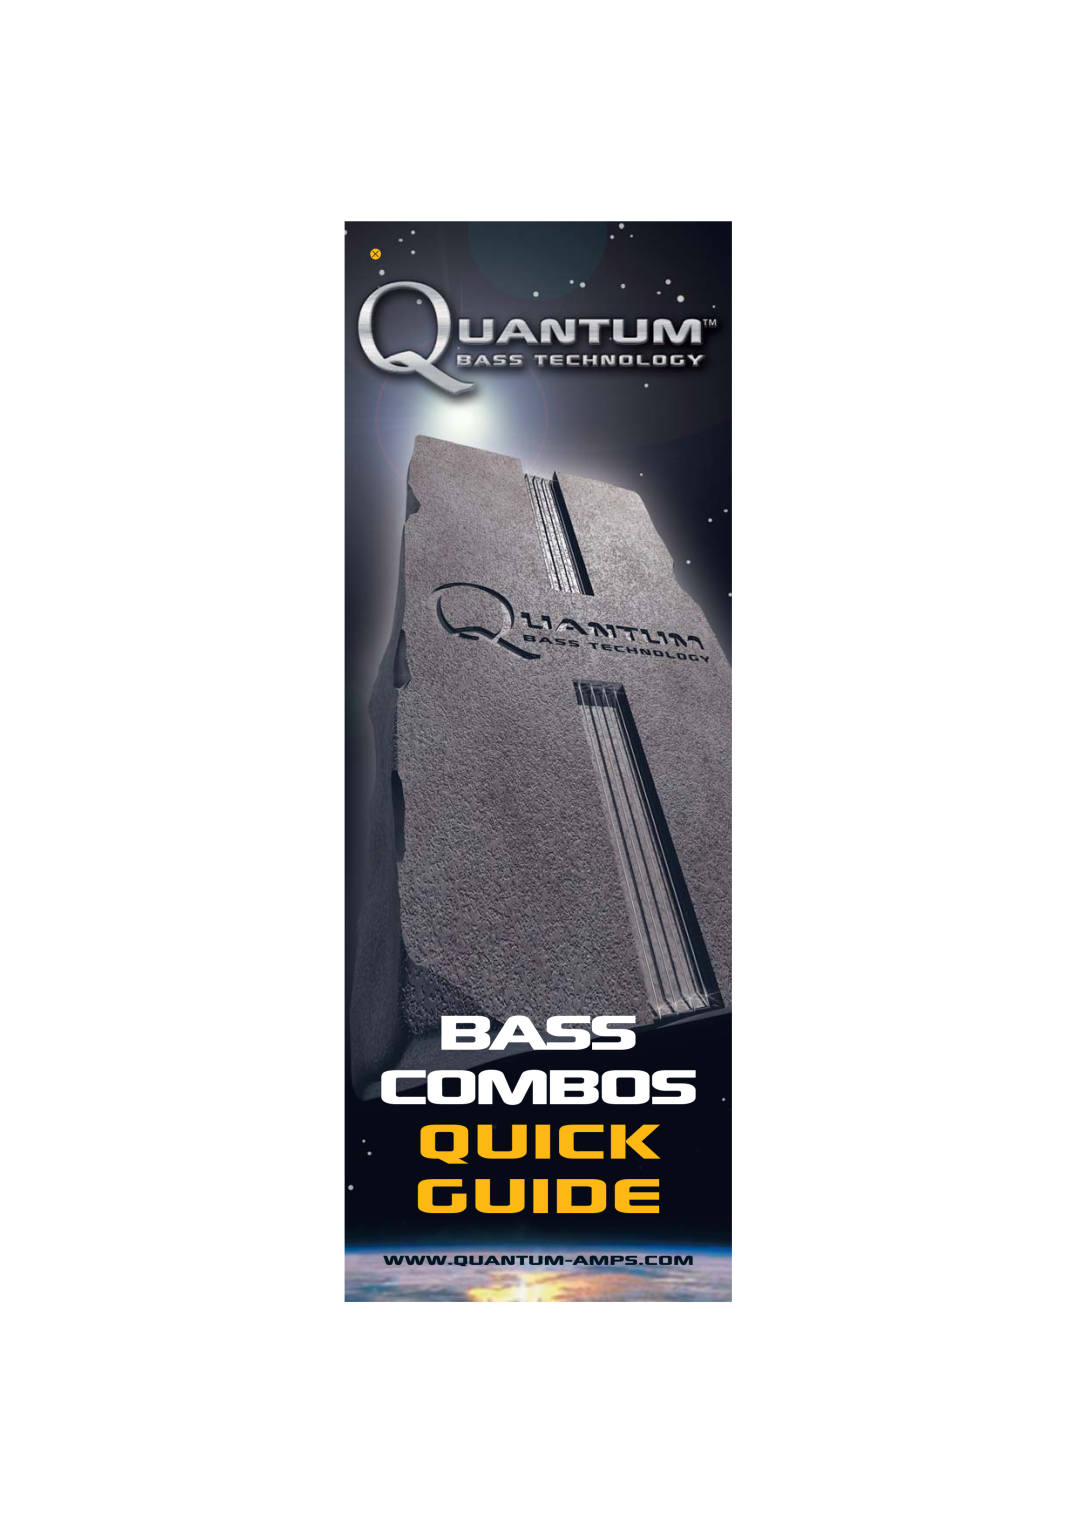 Quantum Audio Speaker manual Bass, quick guide, combos 